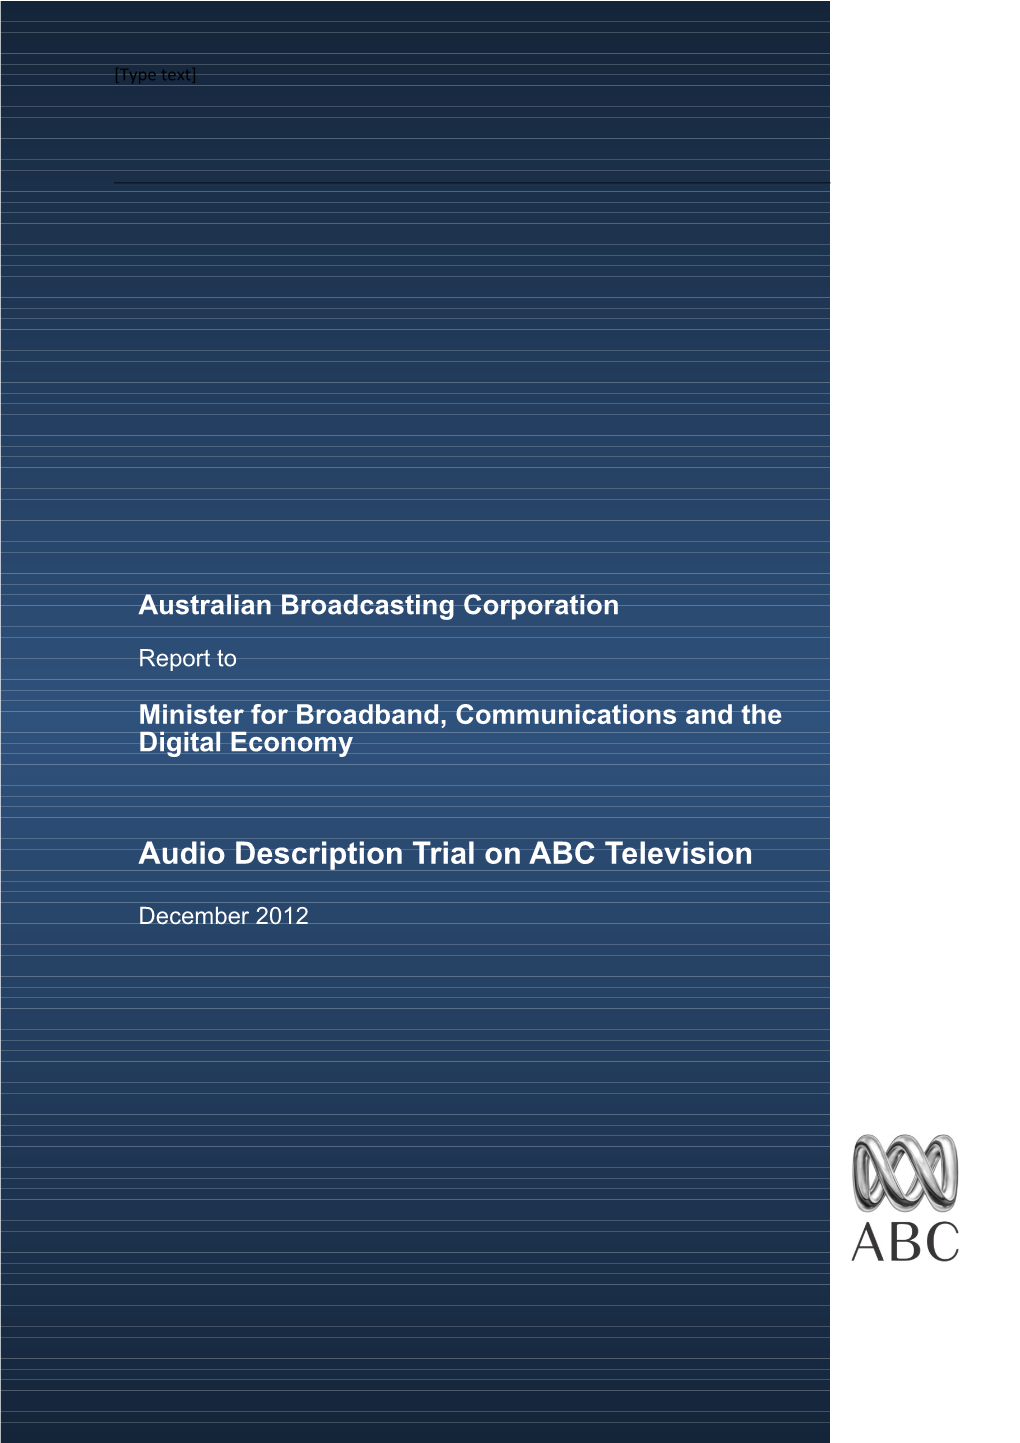 ABC Report on Audio Description Trial